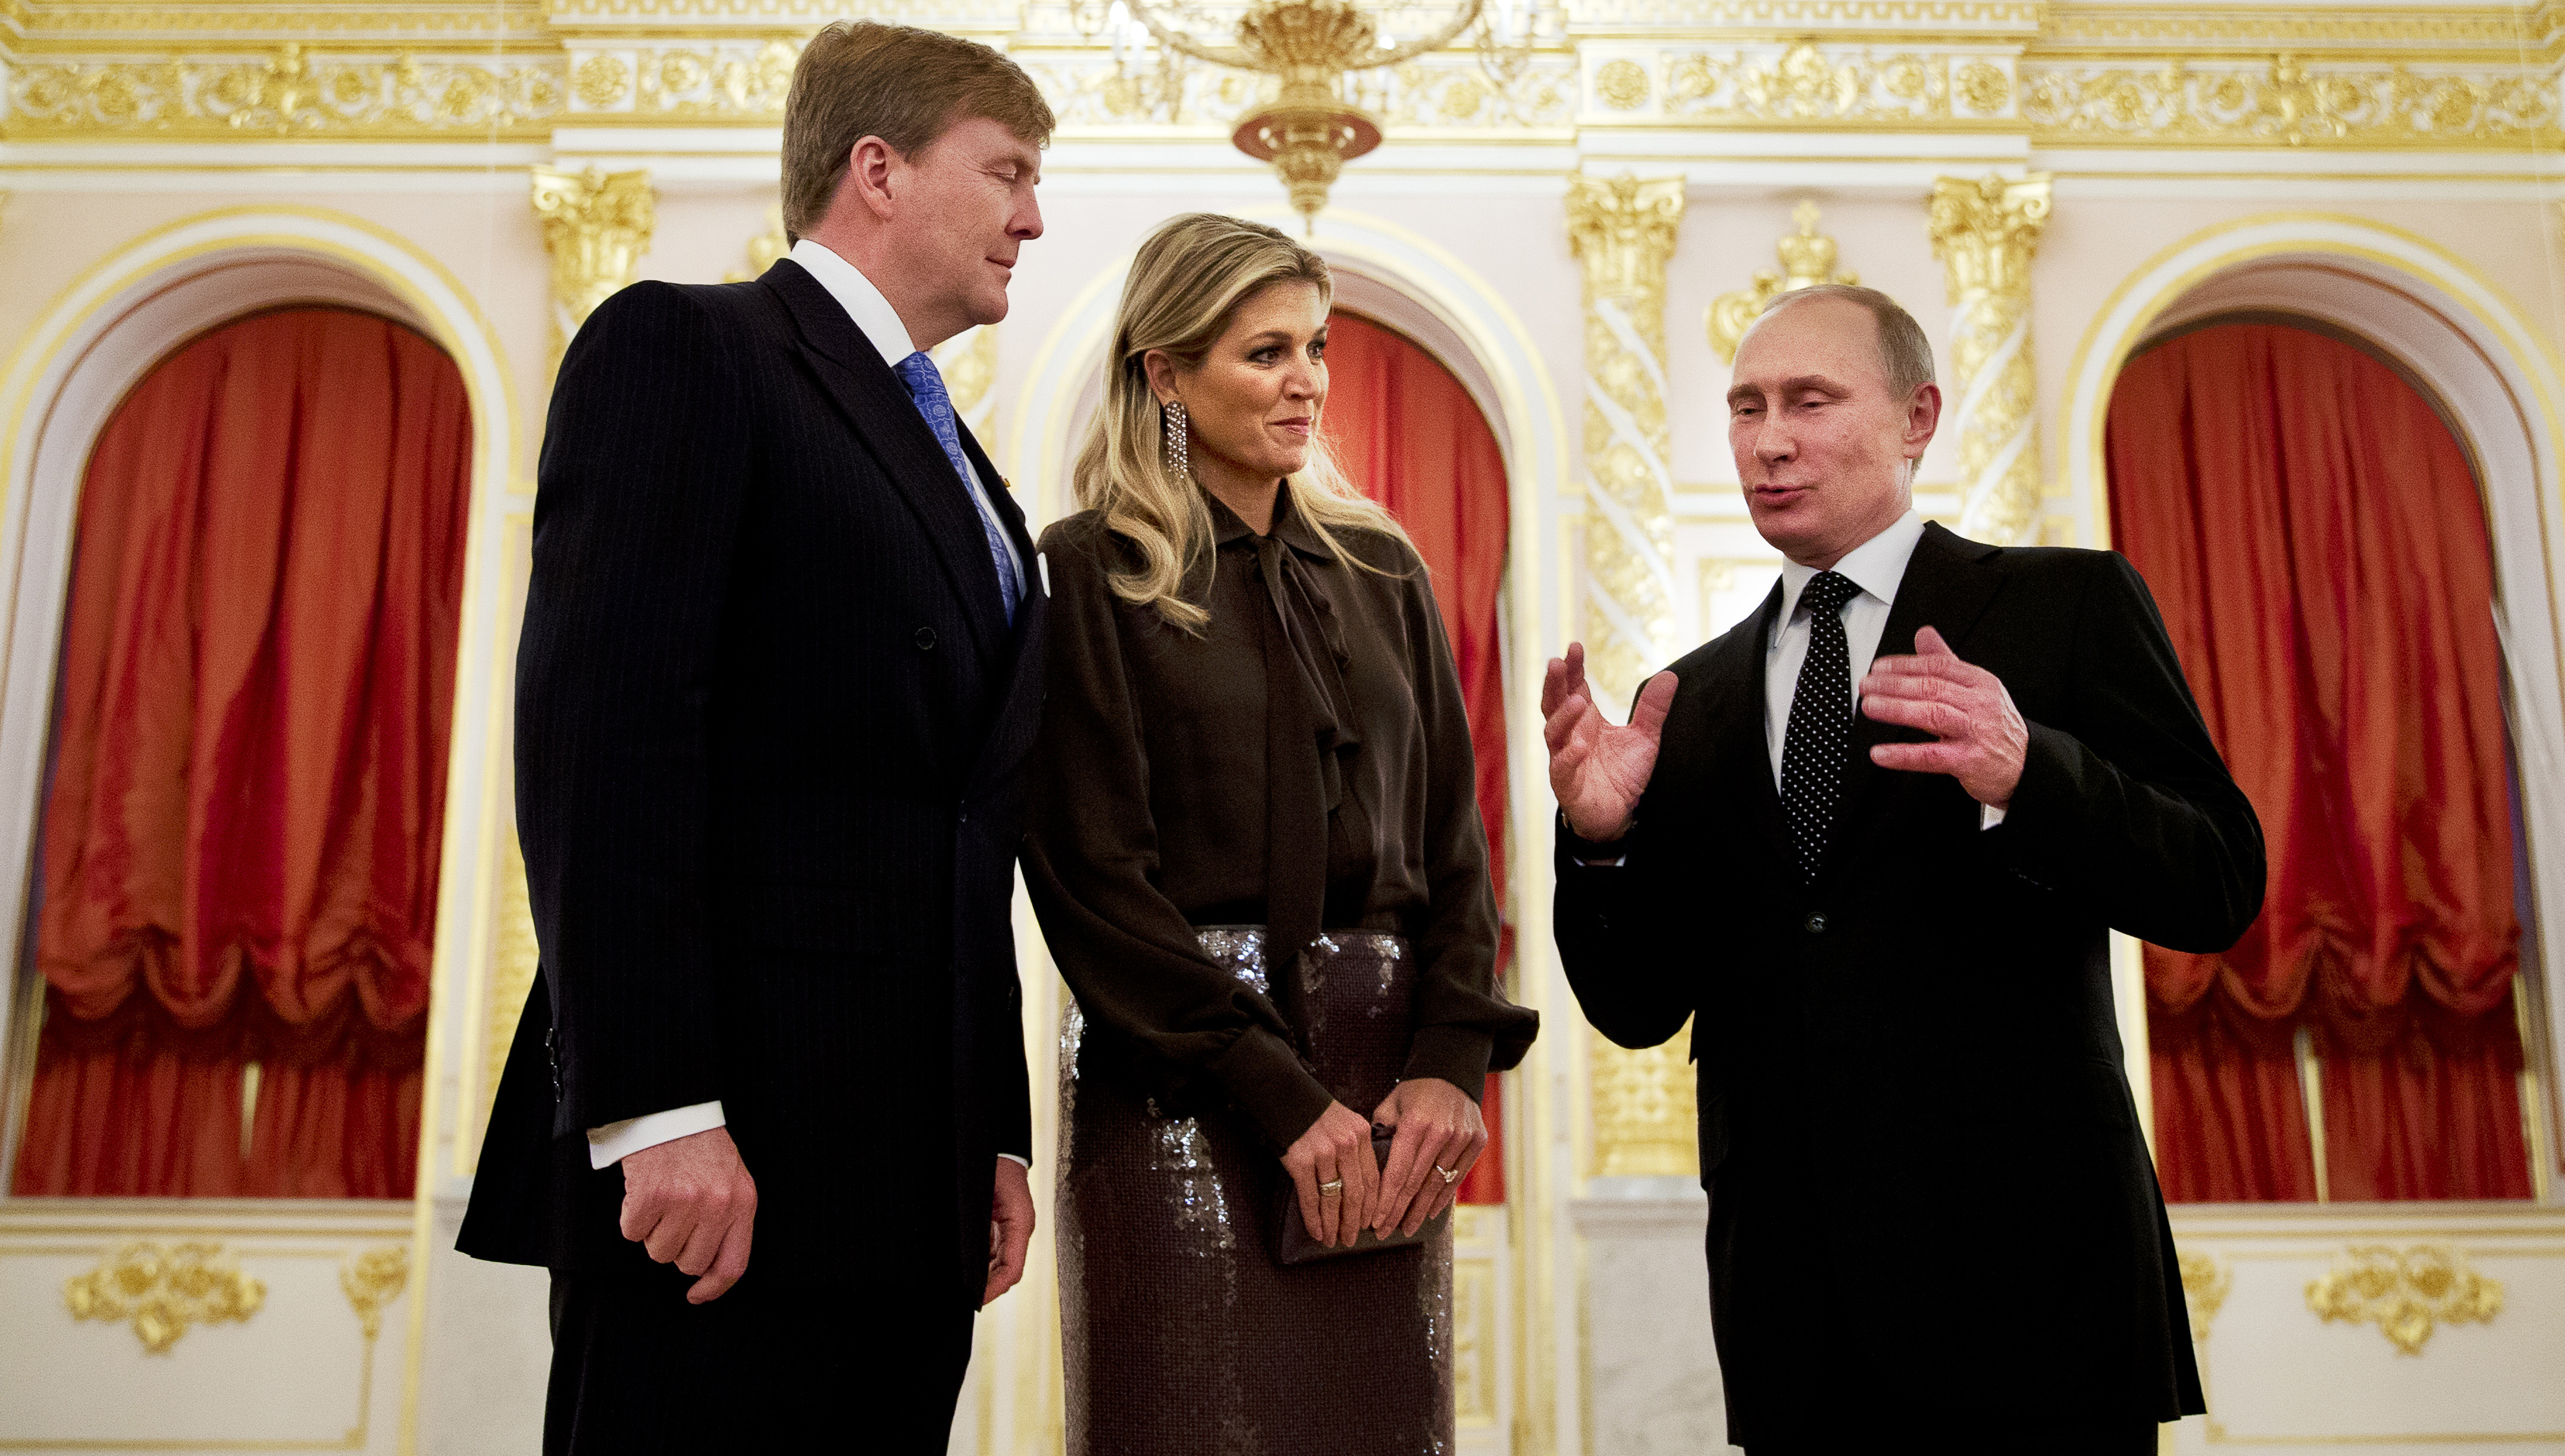 2013-11-08 19:26:50 MOSKOU - Koning Willem-Alexander en koningin Maxima worden door president Vladimir Poetin ontvangen in het Kremlin. Het tweedaags koninklijk bezoek vindt plaats in het kader van het Nederland-Rusland jaar. ANP ROYAL IMAGES JERRY LAMPEN